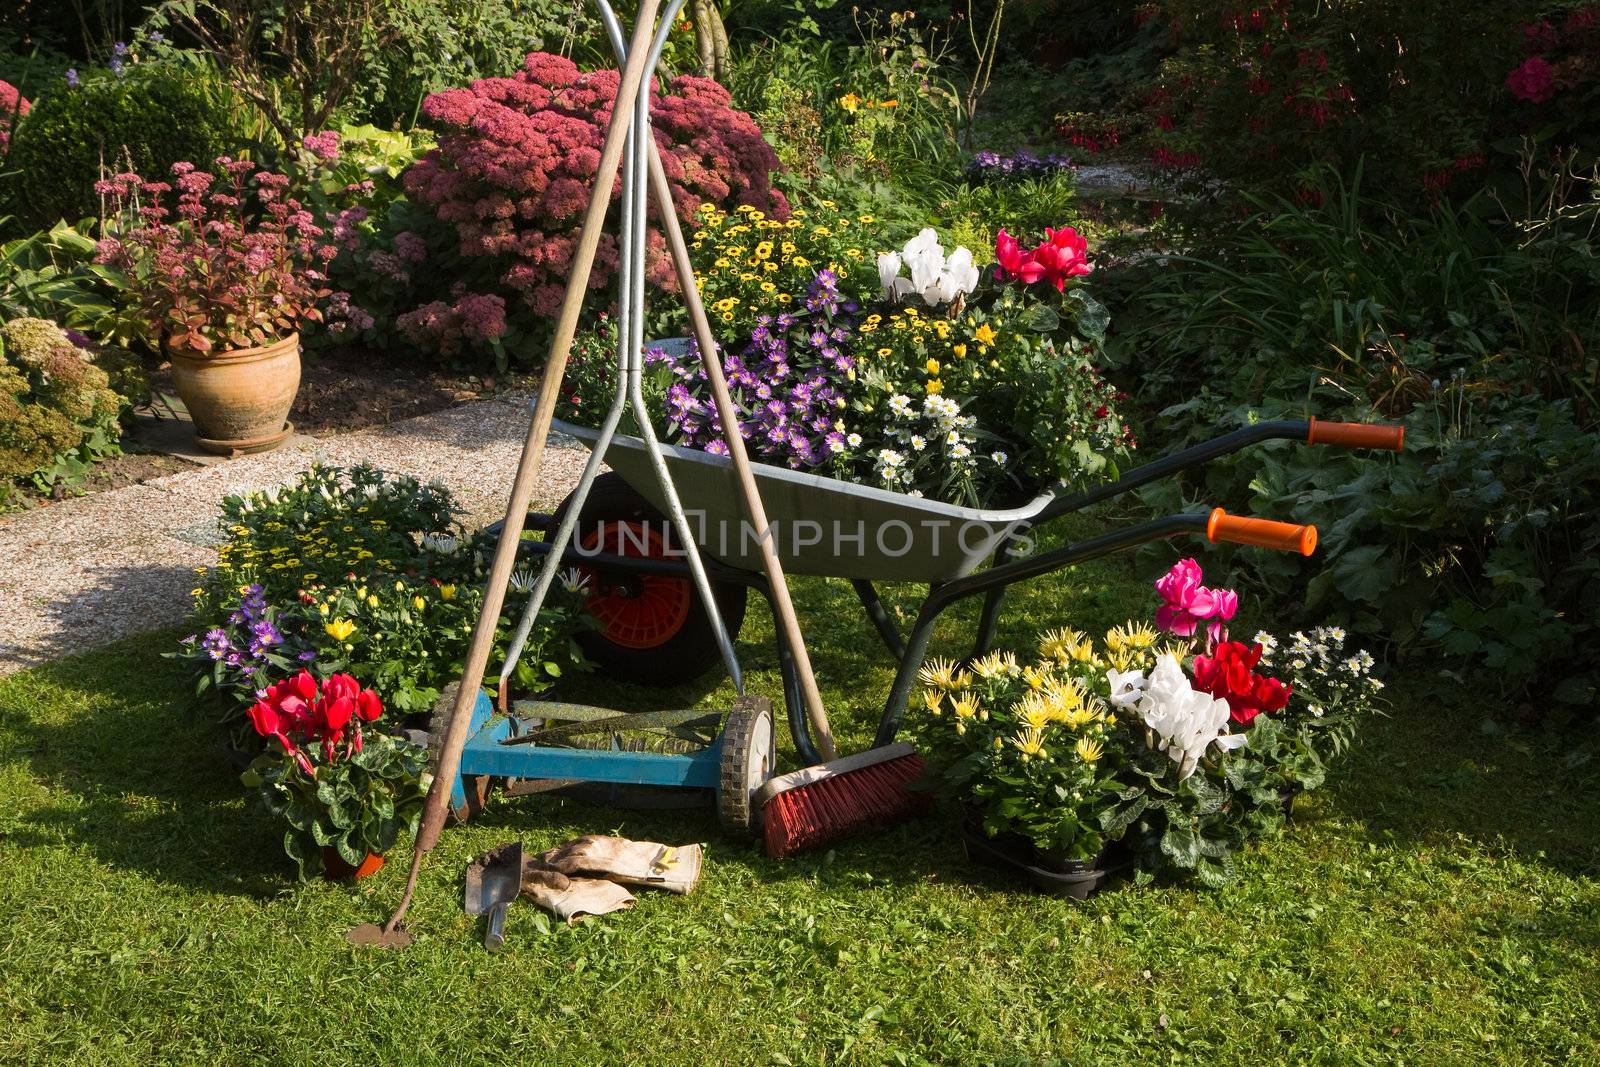 Wheelbarrow, grass mower, garden equipment by Colette